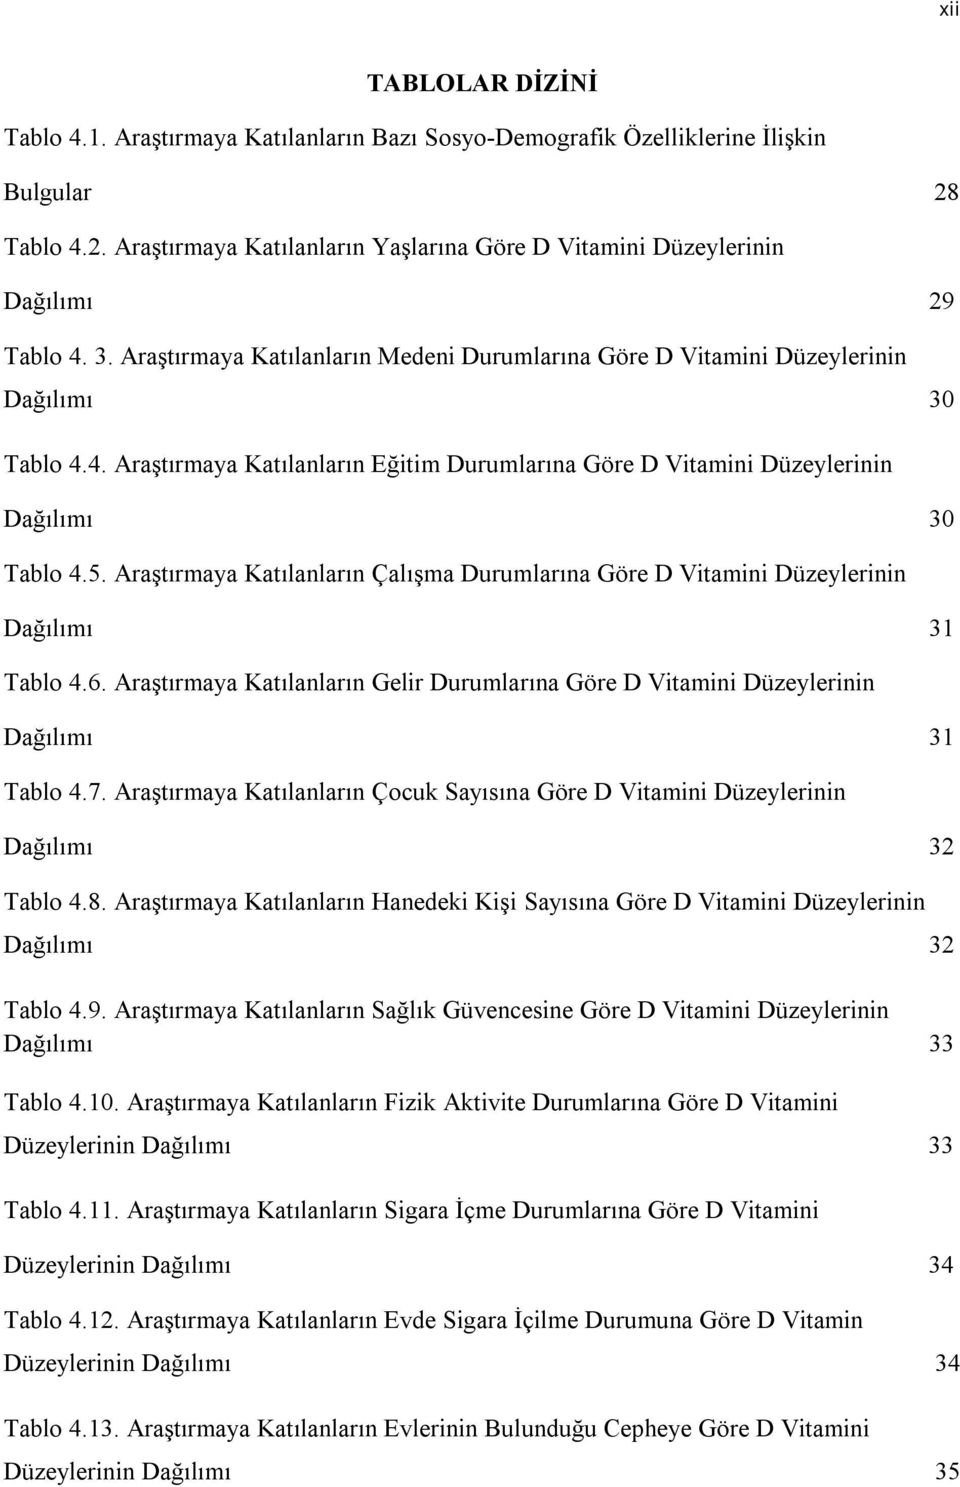 Araştırmaya Katılanların Çalışma Durumlarına Göre D Vitamini Düzeylerinin Dağılımı 31 Tablo 4.6. Araştırmaya Katılanların Gelir Durumlarına Göre D Vitamini Düzeylerinin Dağılımı 31 Tablo 4.7.